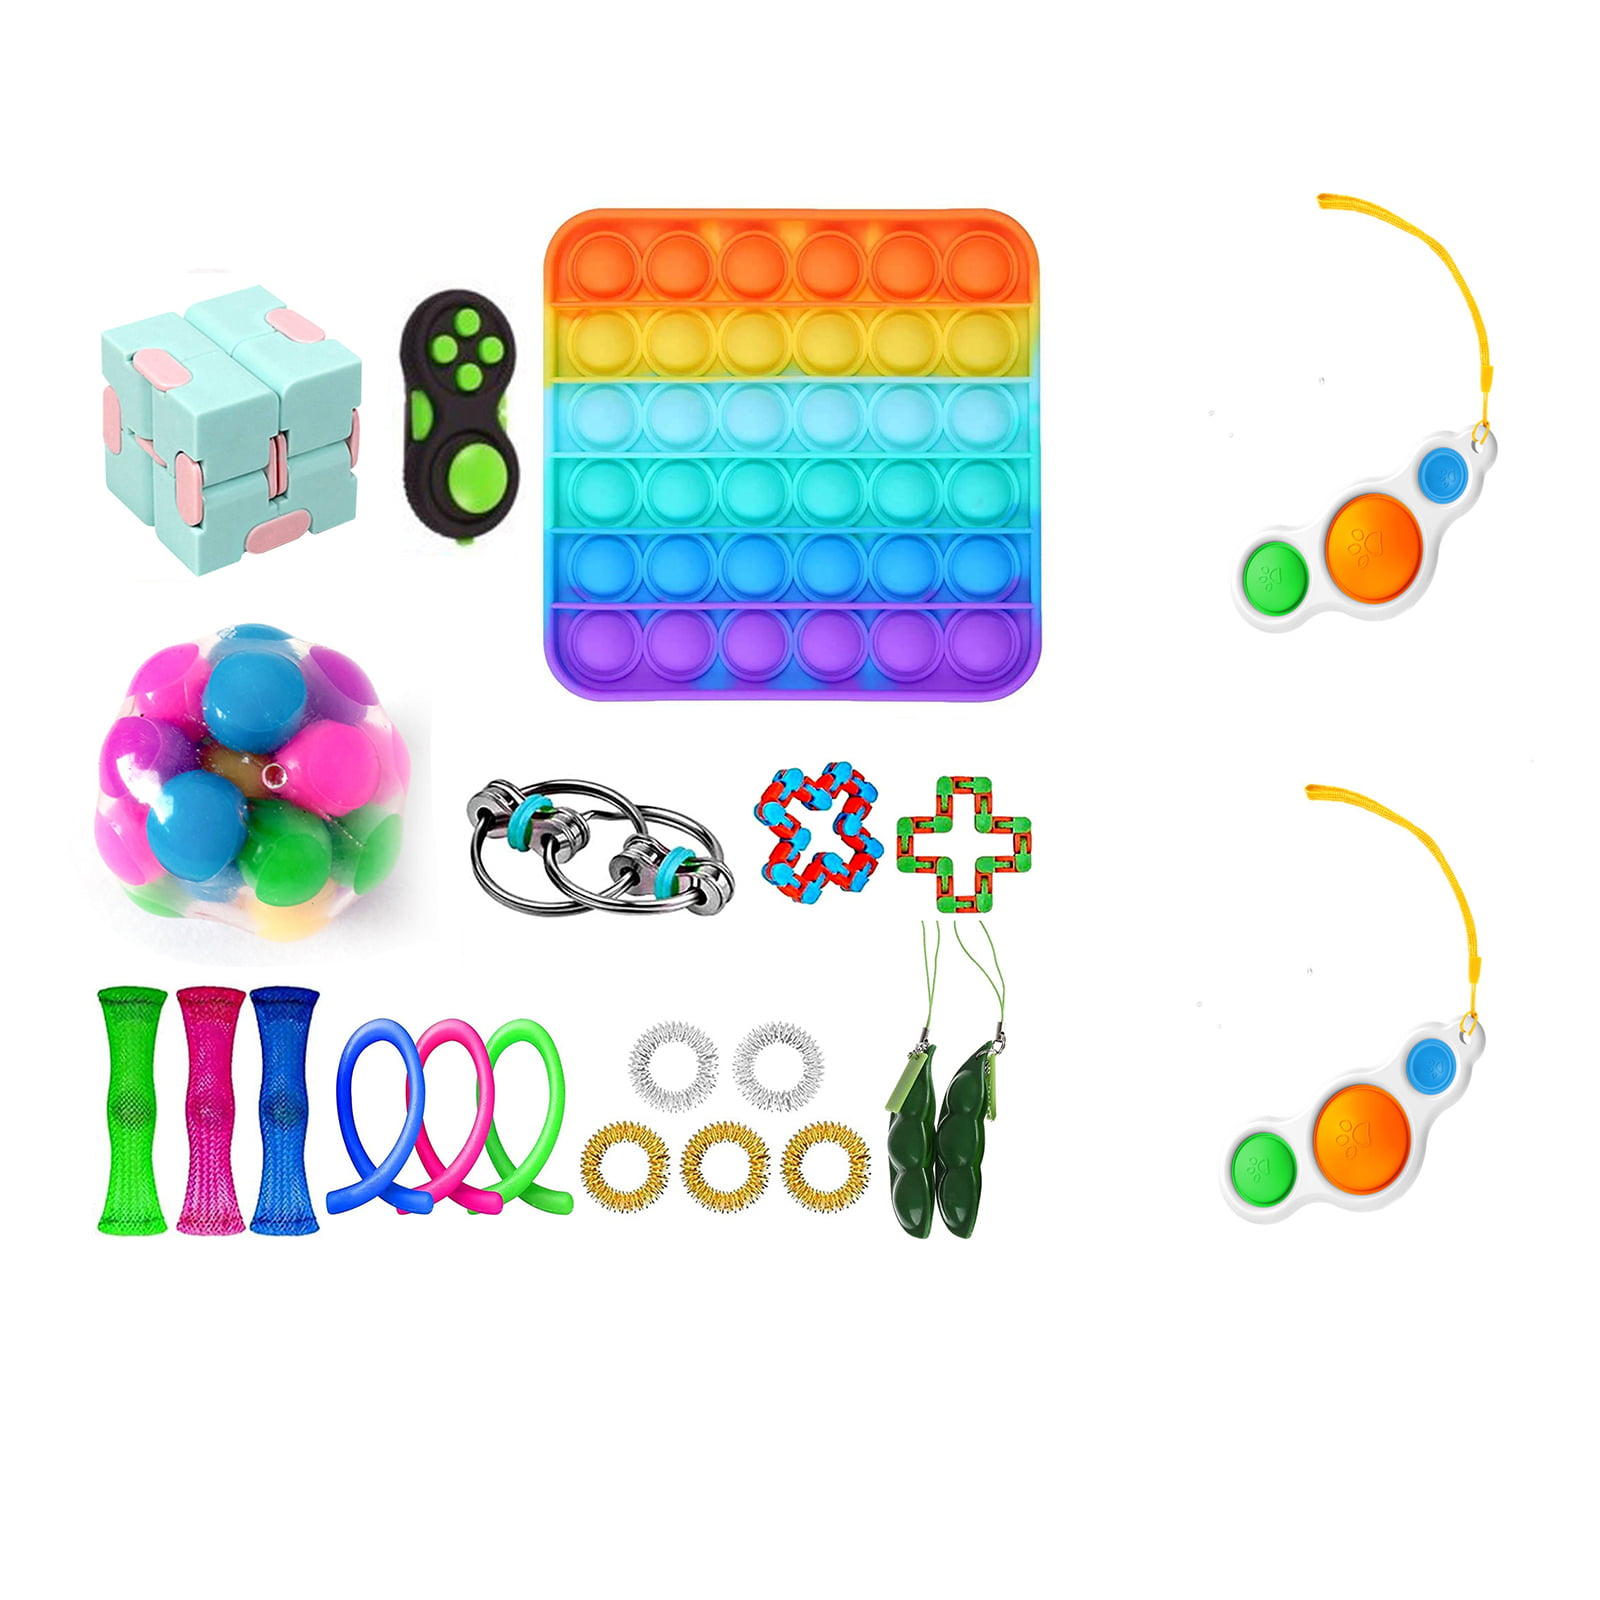 Details about   29PCS Push Bubble Pop Sensory Fidget Toy Stress Relief Family Kids Game Gifts AU 